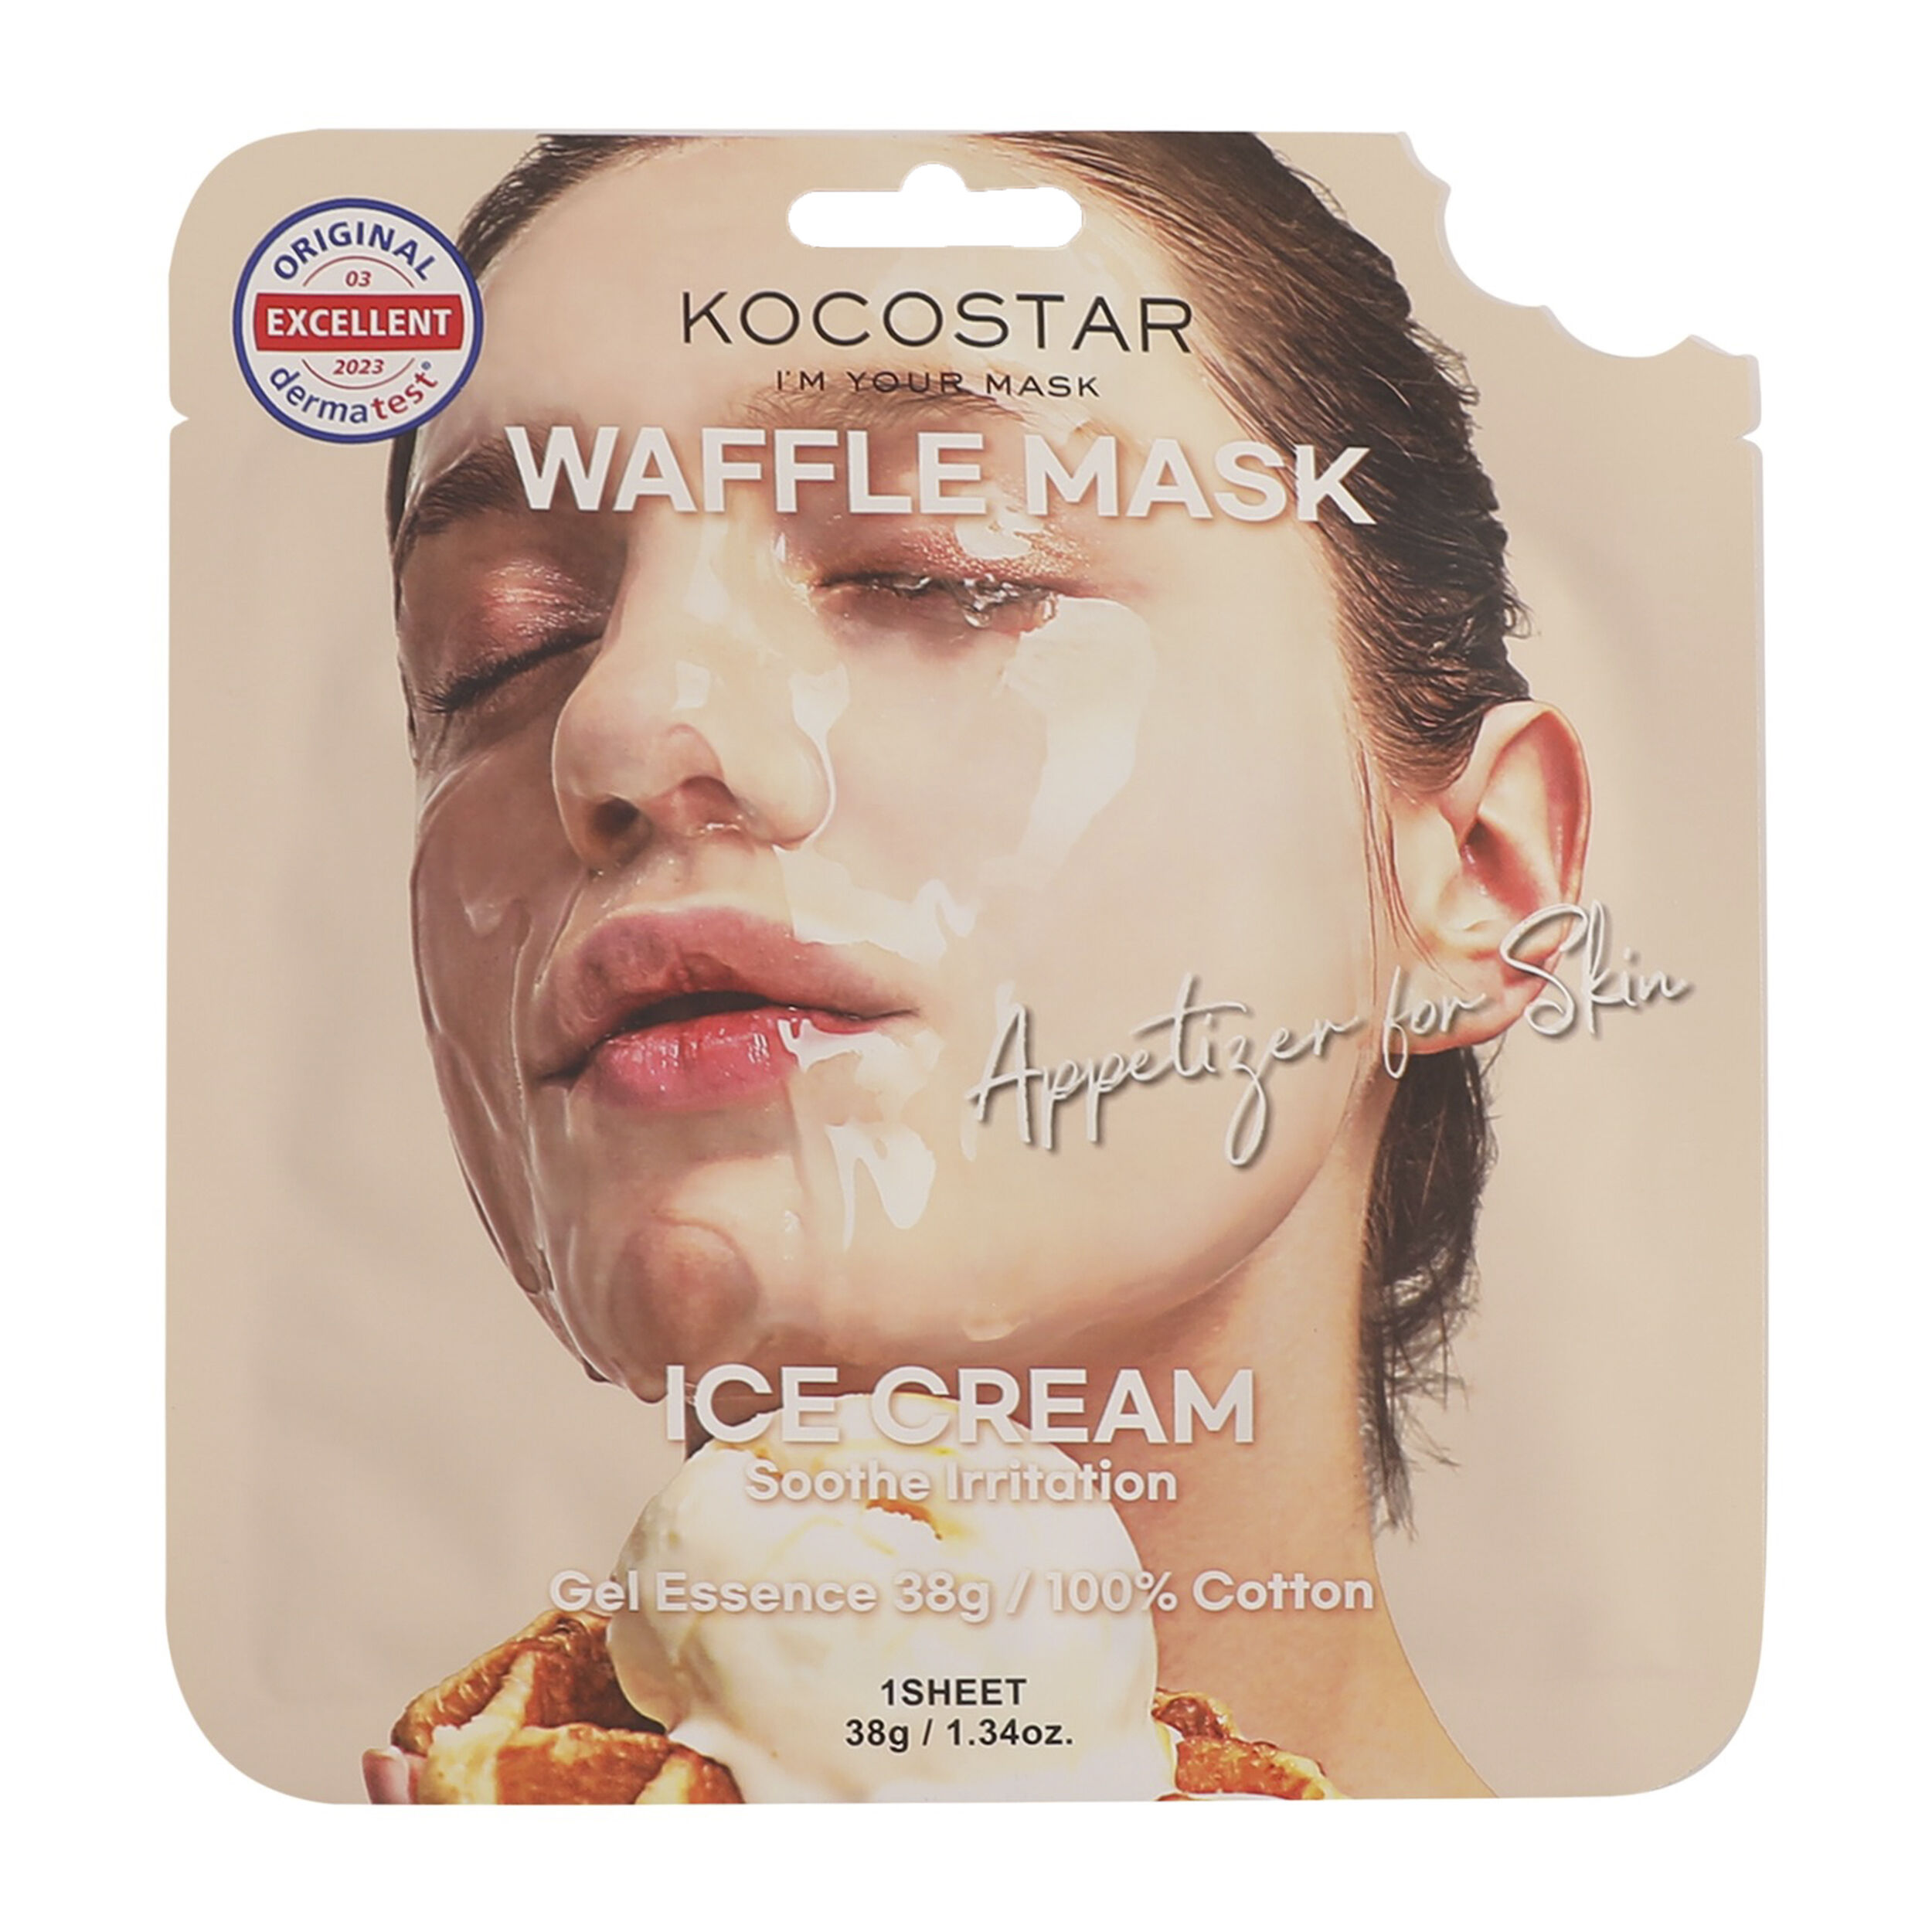 омолаживающая вафельная маска с экстрактом кленового сиропа kocostar waffle mask maple 1 шт Маска для лица с мороженым Kocostar Waffle Mask, 38 гр